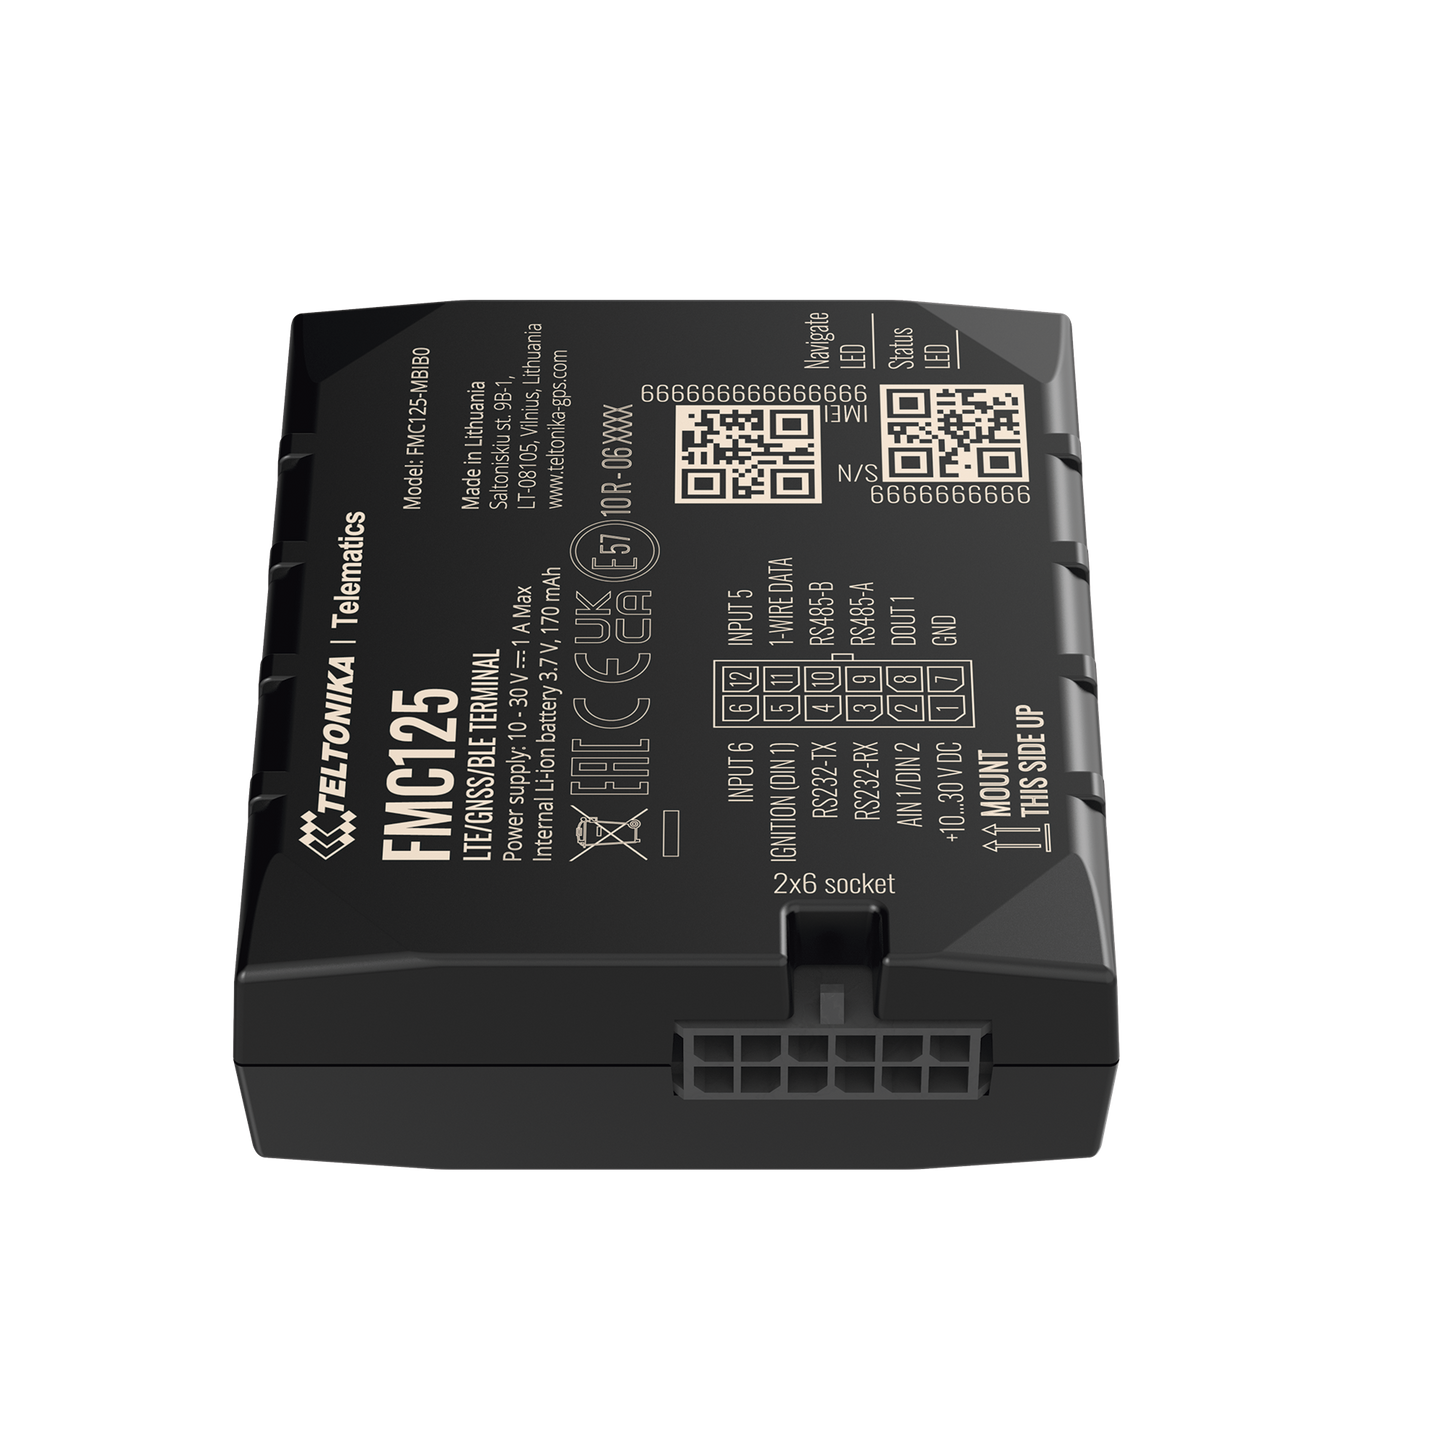 Rastreador Vehicular 4G LTE CAT 1 y 2G / Identificación de Conductores / Bloqueo Remoto / Detección de Jammer / Sensores Bluetooth / Múltiples I/O / Doble Sim / RS485 / RS232